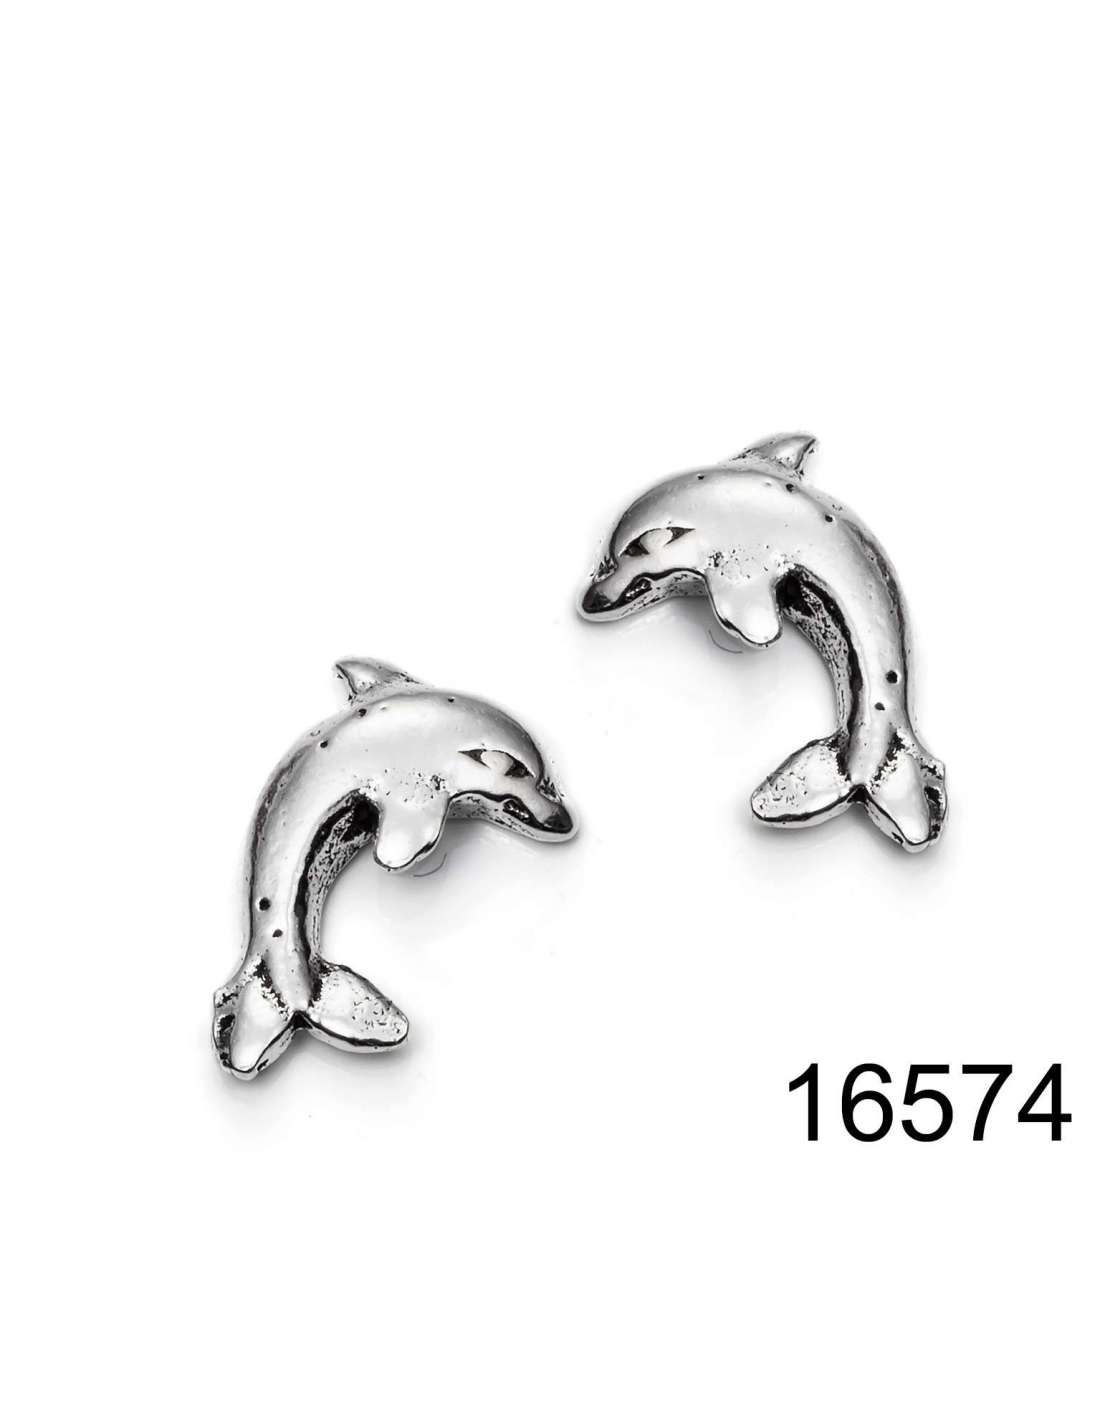 JLJ Novedad Joyas-Joyas Pendientes de mujer Pendientes plateados con delfines número 8 Forma Pendientes elegantes de noche Joyas de plata con zirconia cúbica blanca arete 